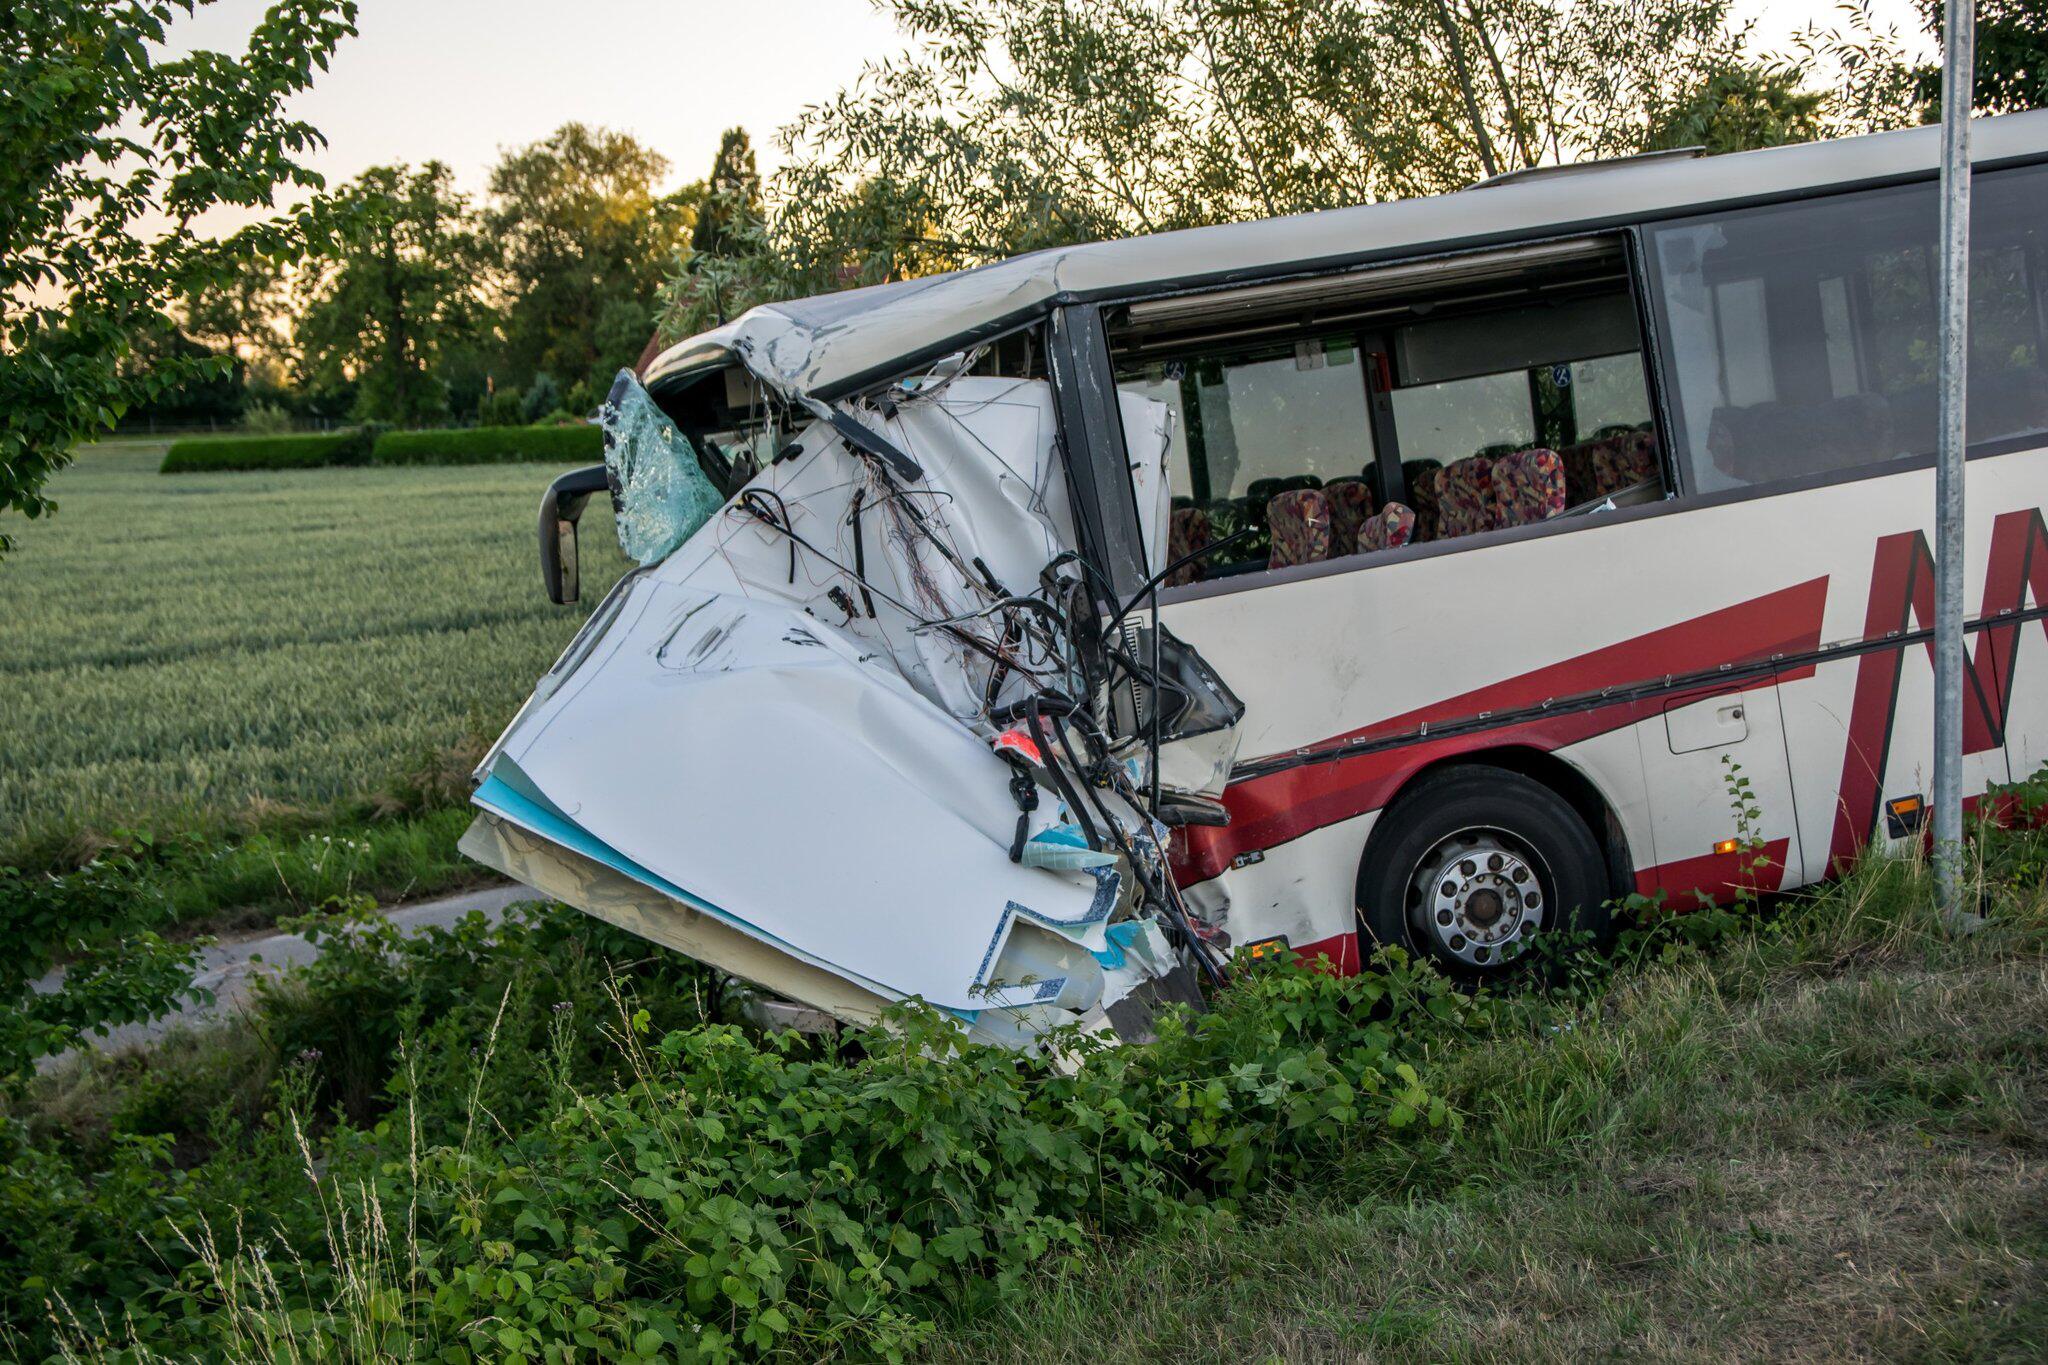 Auf dem Weg zum Jugendcamp: 46 Verletzte bei Busunfall | WEB.DE